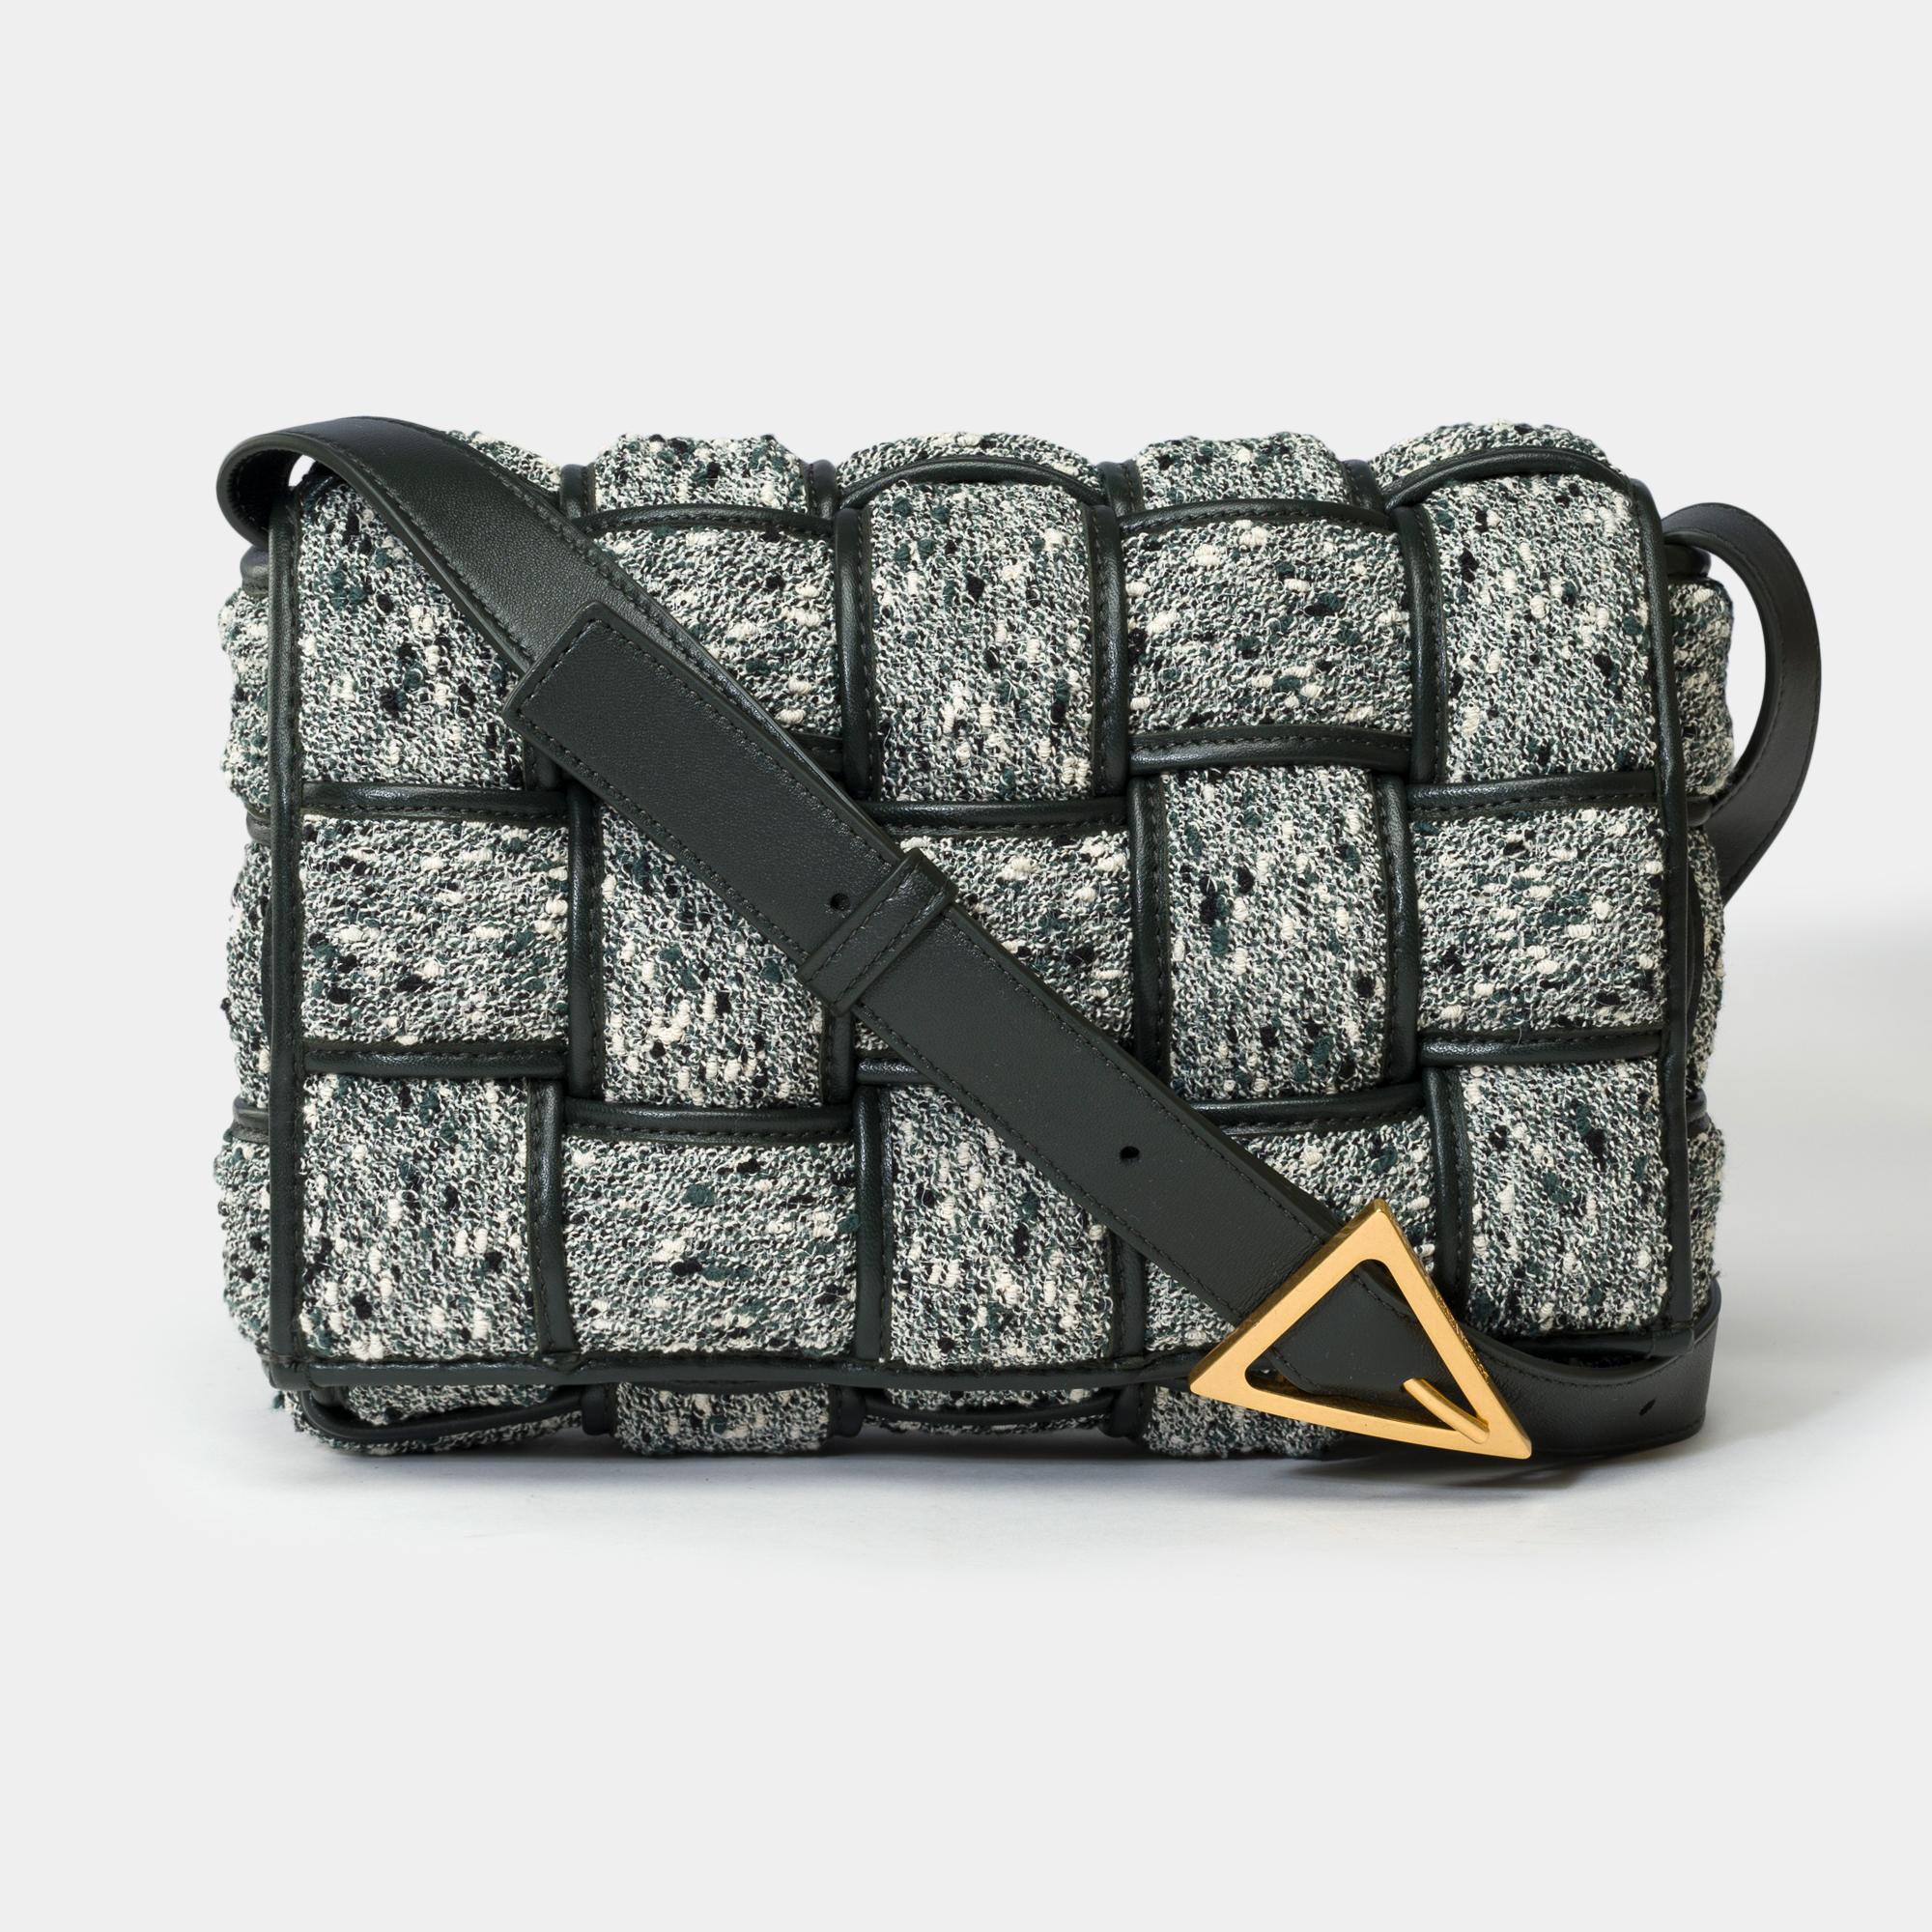 Le sac Cassette Crossbody de Bottega Veneta est réalisé en tweed matelassé gris et vert avec un intérieur en cuir d'agneau noir, des garnitures en métal doré, une bandoulière réglable en cuir noir pour un portage à l'épaule ou en